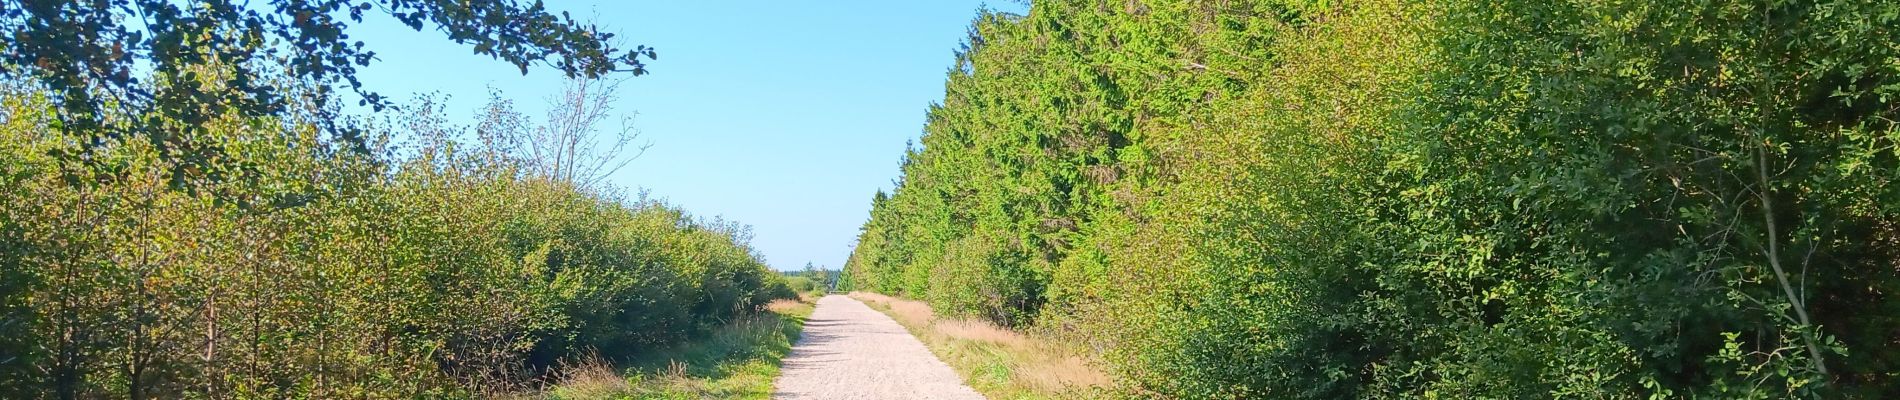 Tour Wandern Weismes - autour de botrange et du bois de sourbrodt - Photo